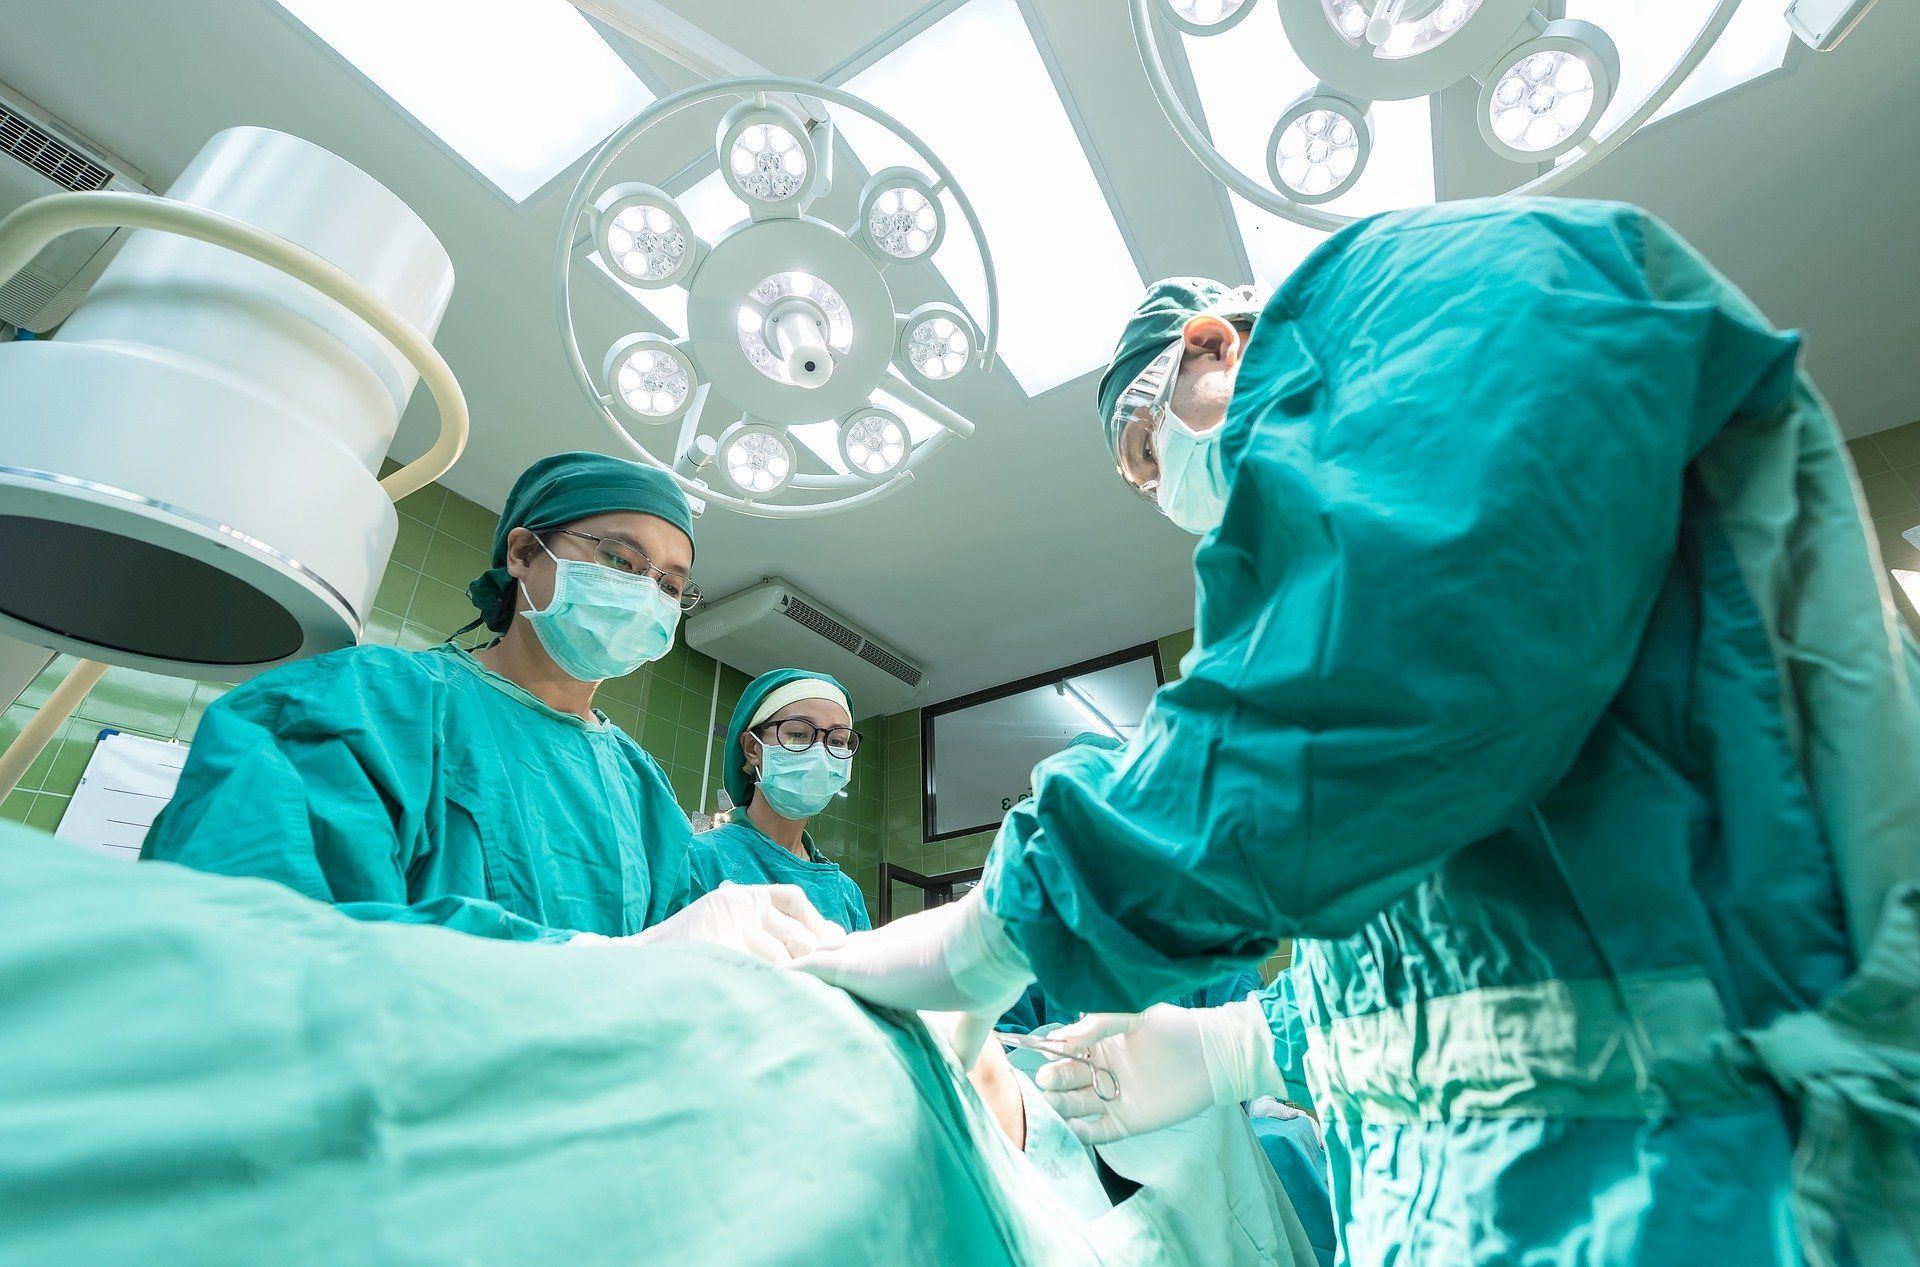 Noi proceduri și protocoale implementate la Spitalul Floreasca